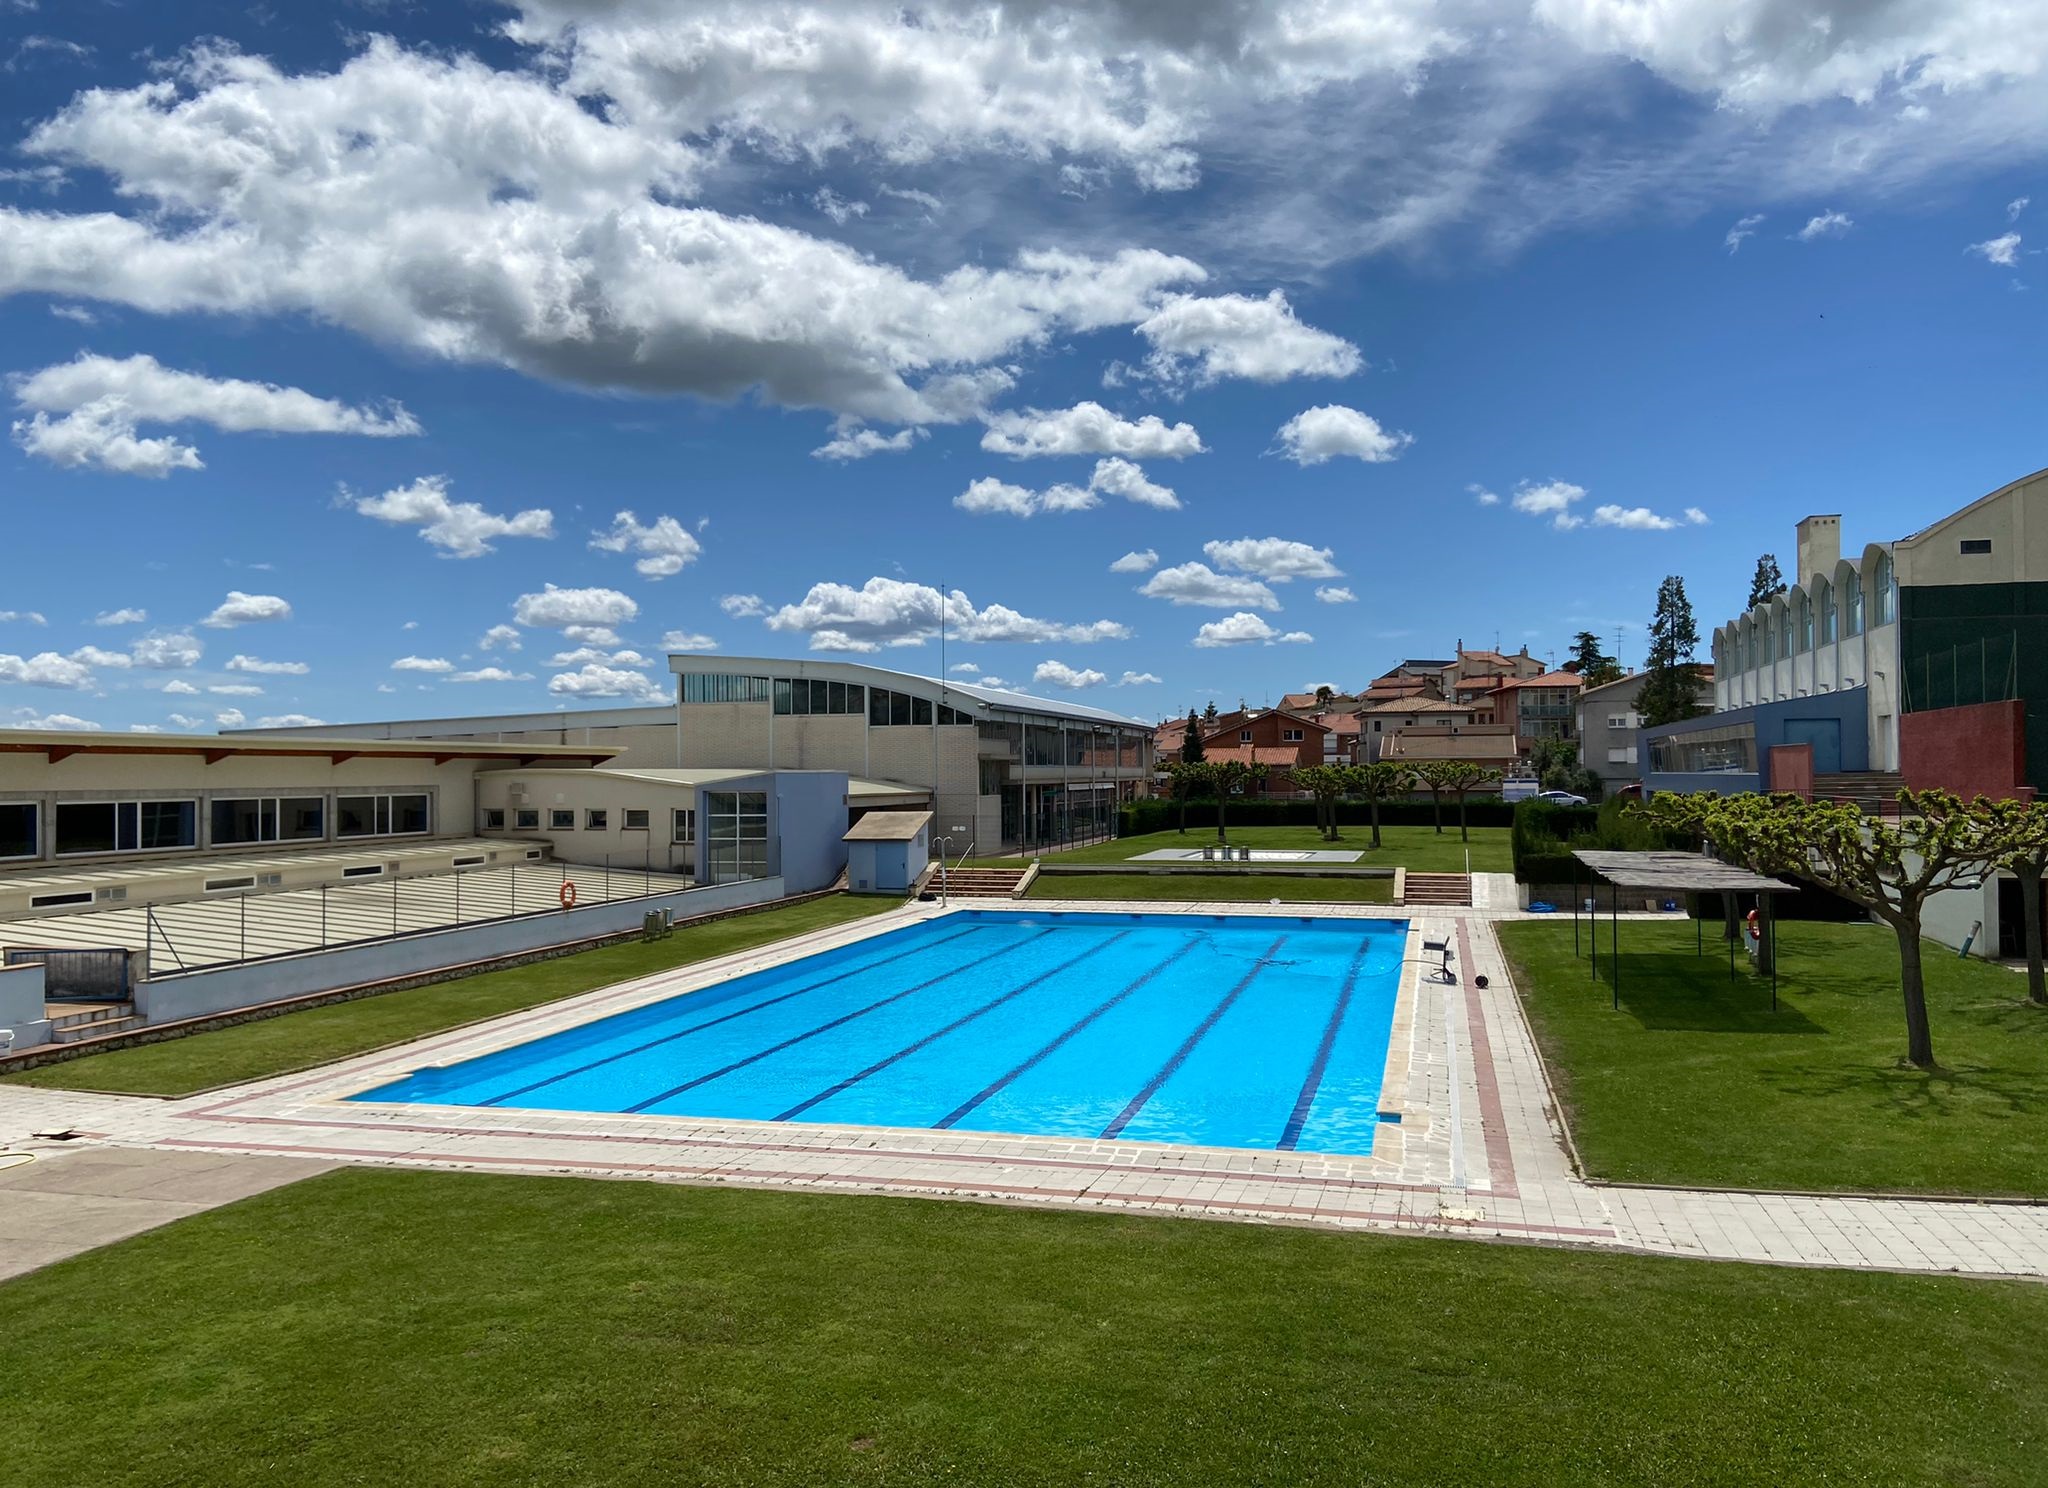 Berga tanca la temporada d'estiu de les piscines municipals de la zona esportiva amb 16.443 usuaris i usuàries